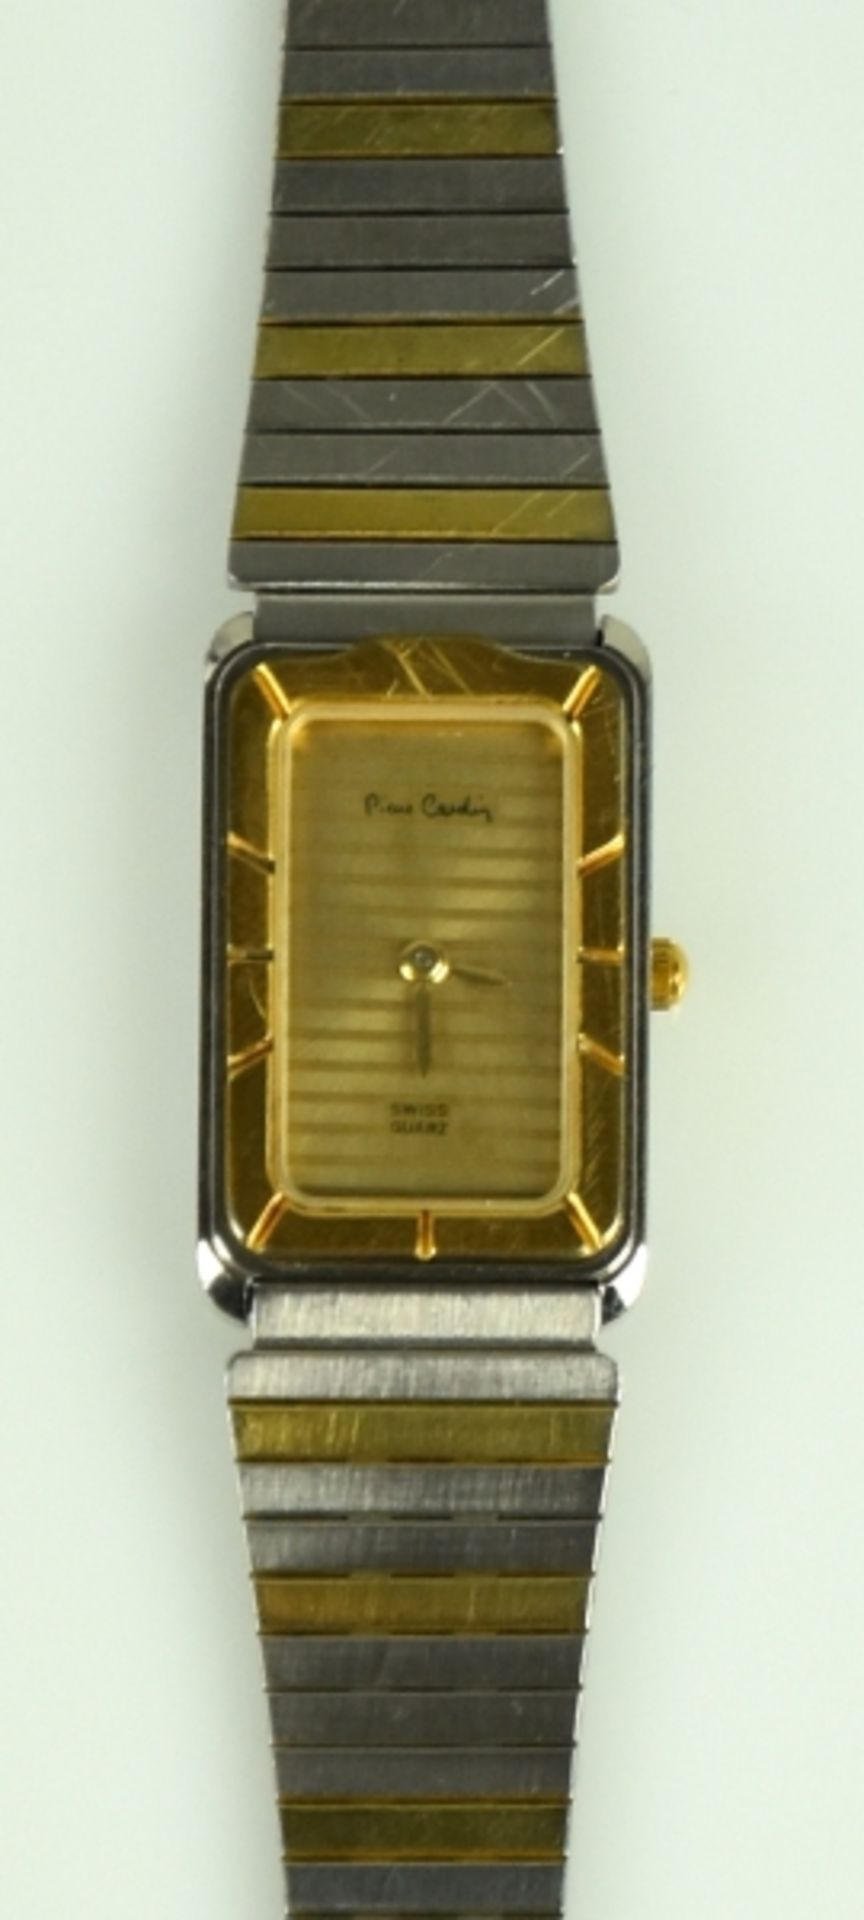 DAMENARMBANDUHR Pierre Cardin, Chromachron, Quarz, Schweiz, bicolor, rechteckiges Stahlgehäuse mit